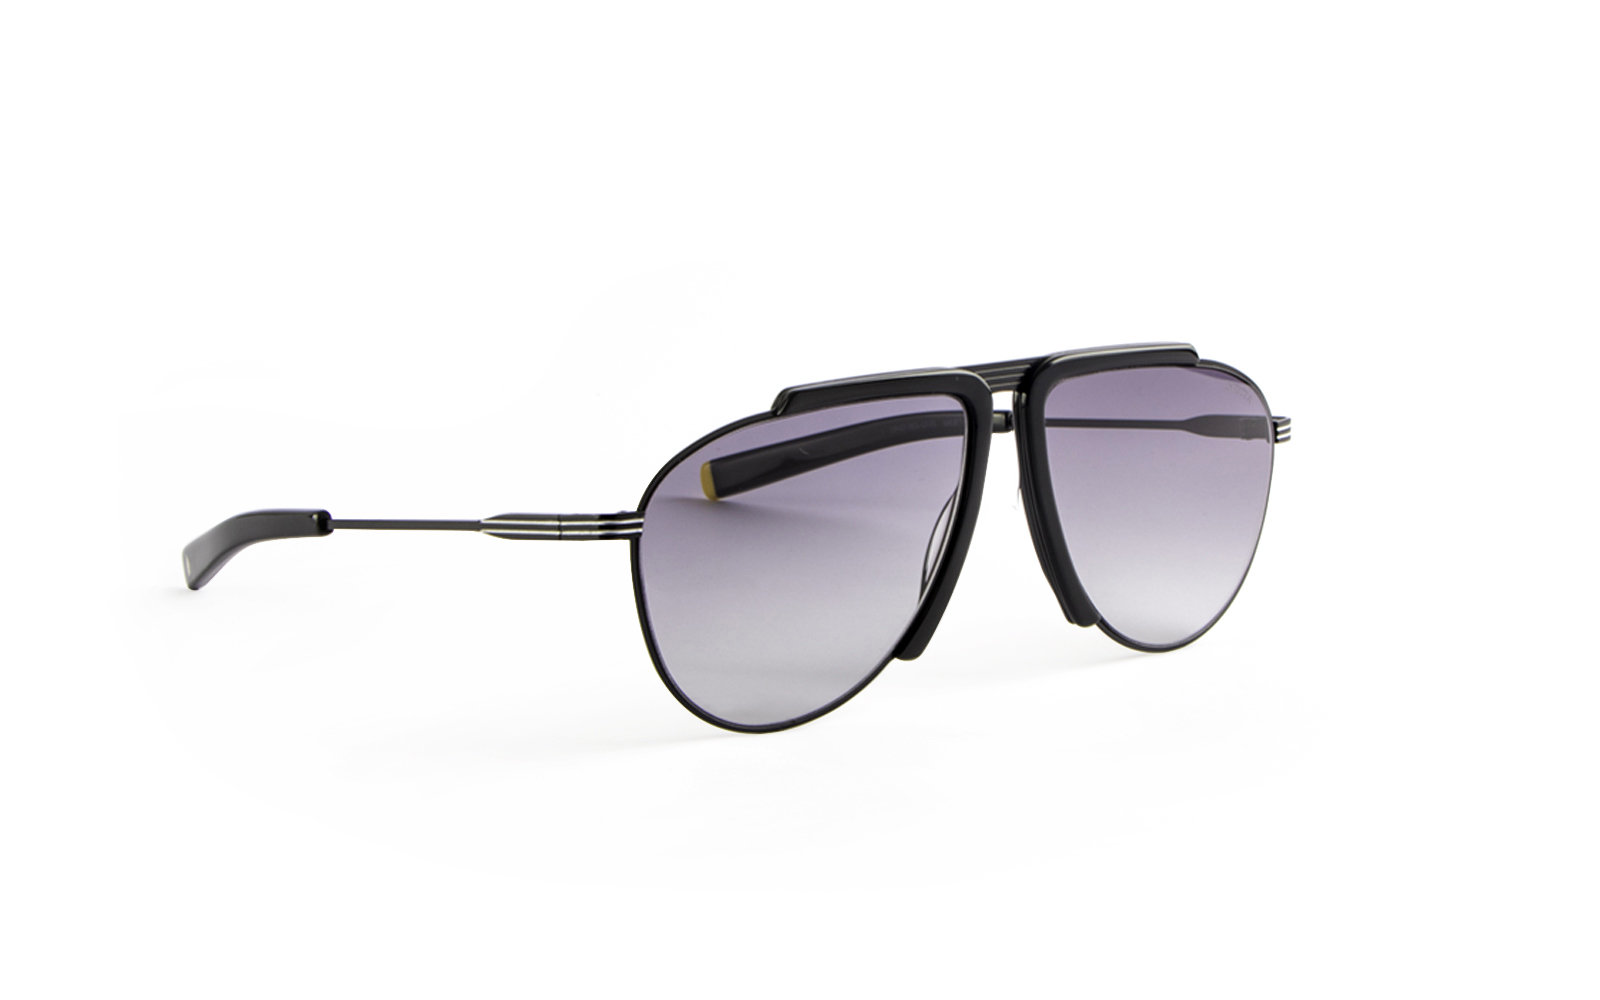 Invicta Men's Bolt Pilot Sunglasses, Black (19422-BOL-13-01)